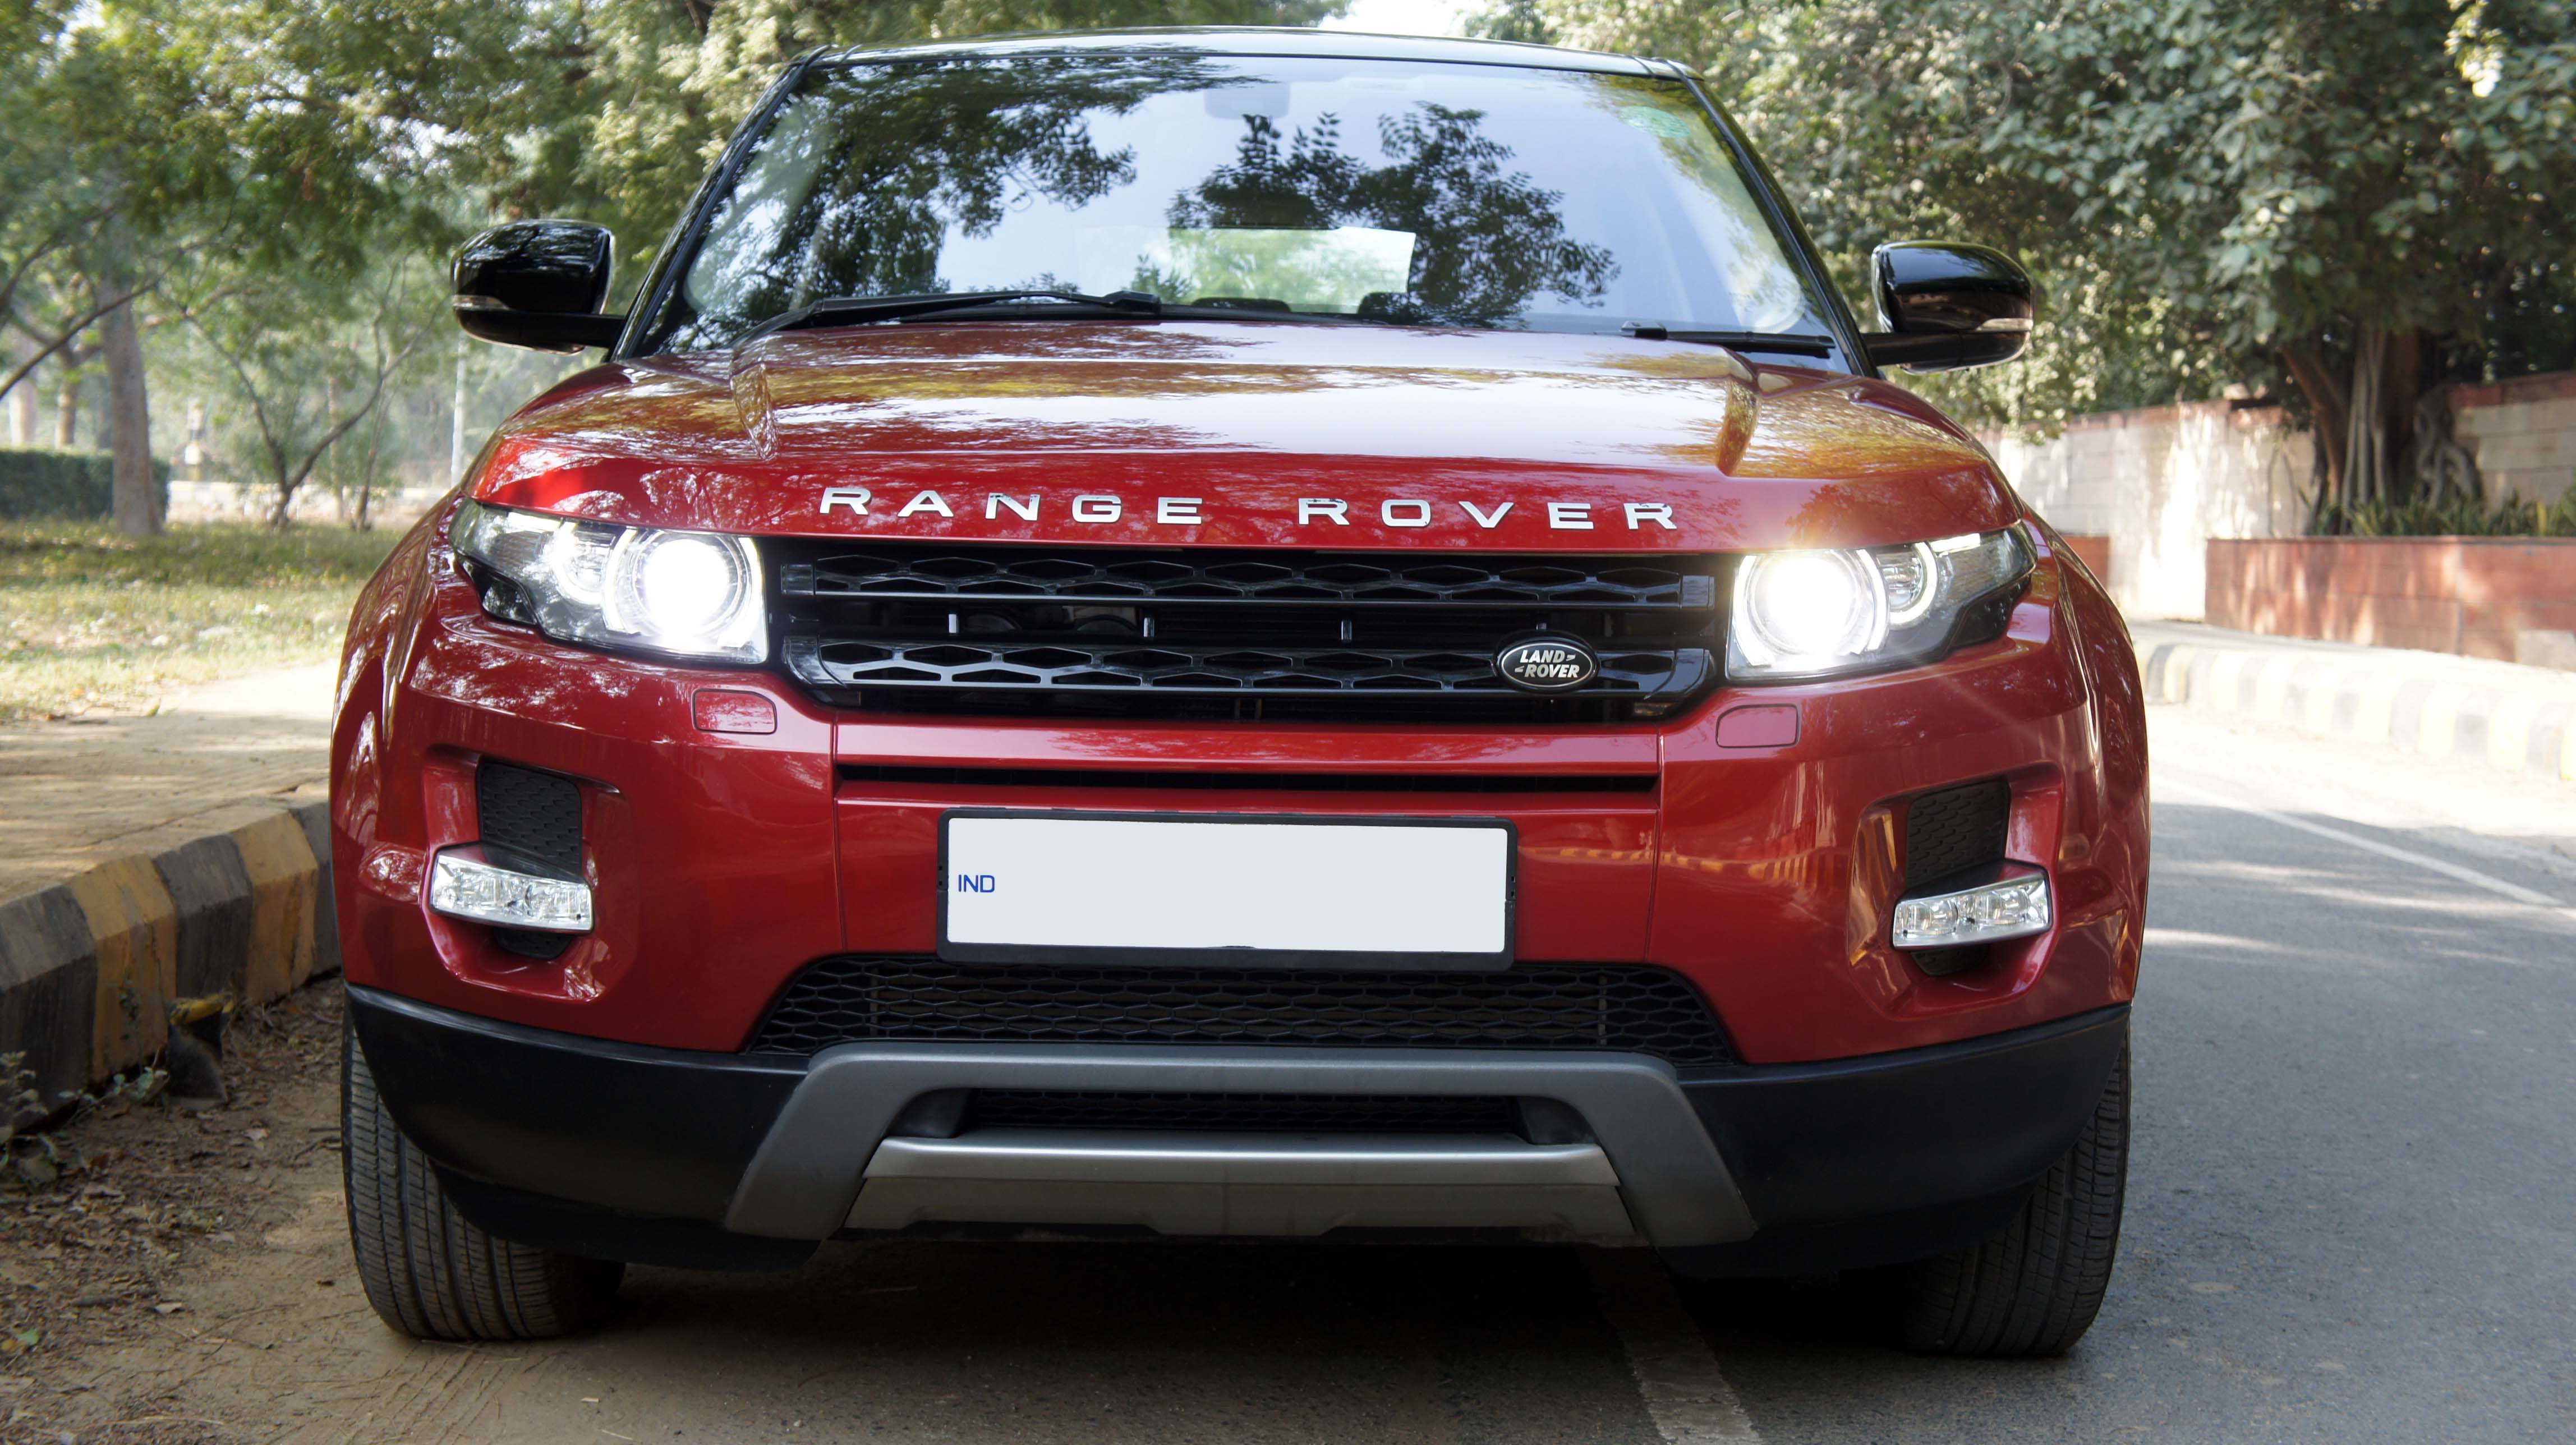 Range Rover EVOQUE PURE 2.2 DIESEL